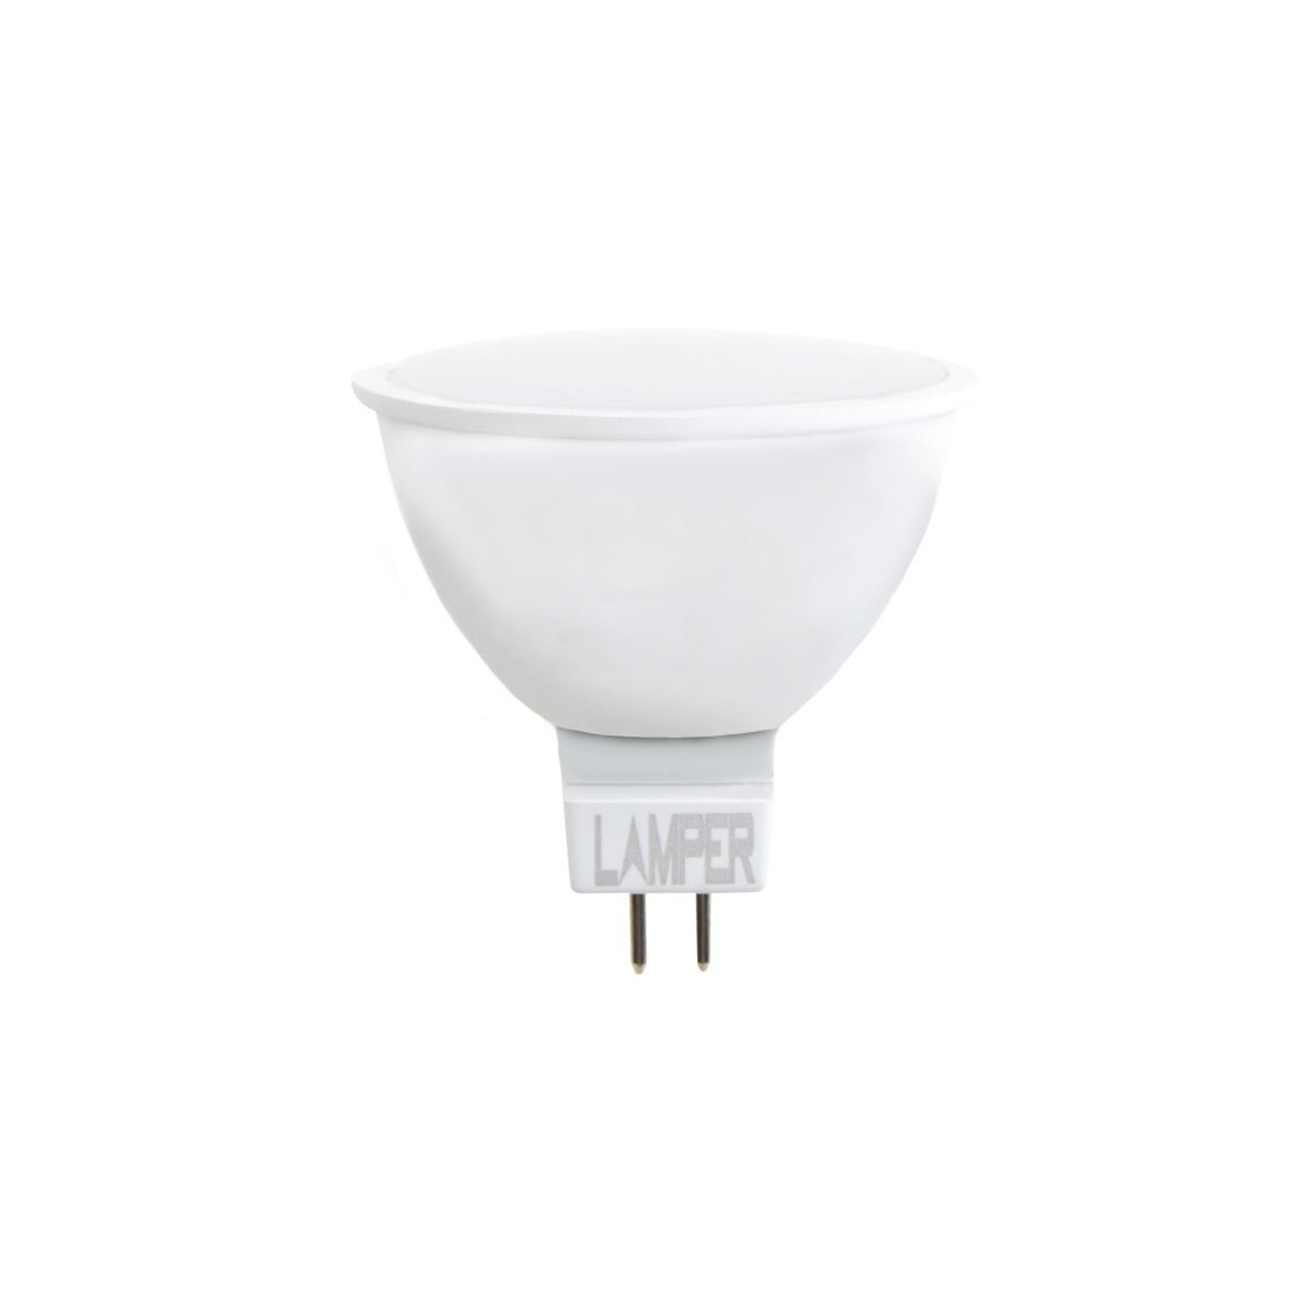 Фото Лампа LED Lamper «STANDARD» (MR16, GU5.3, 580 Lm) {601-754}